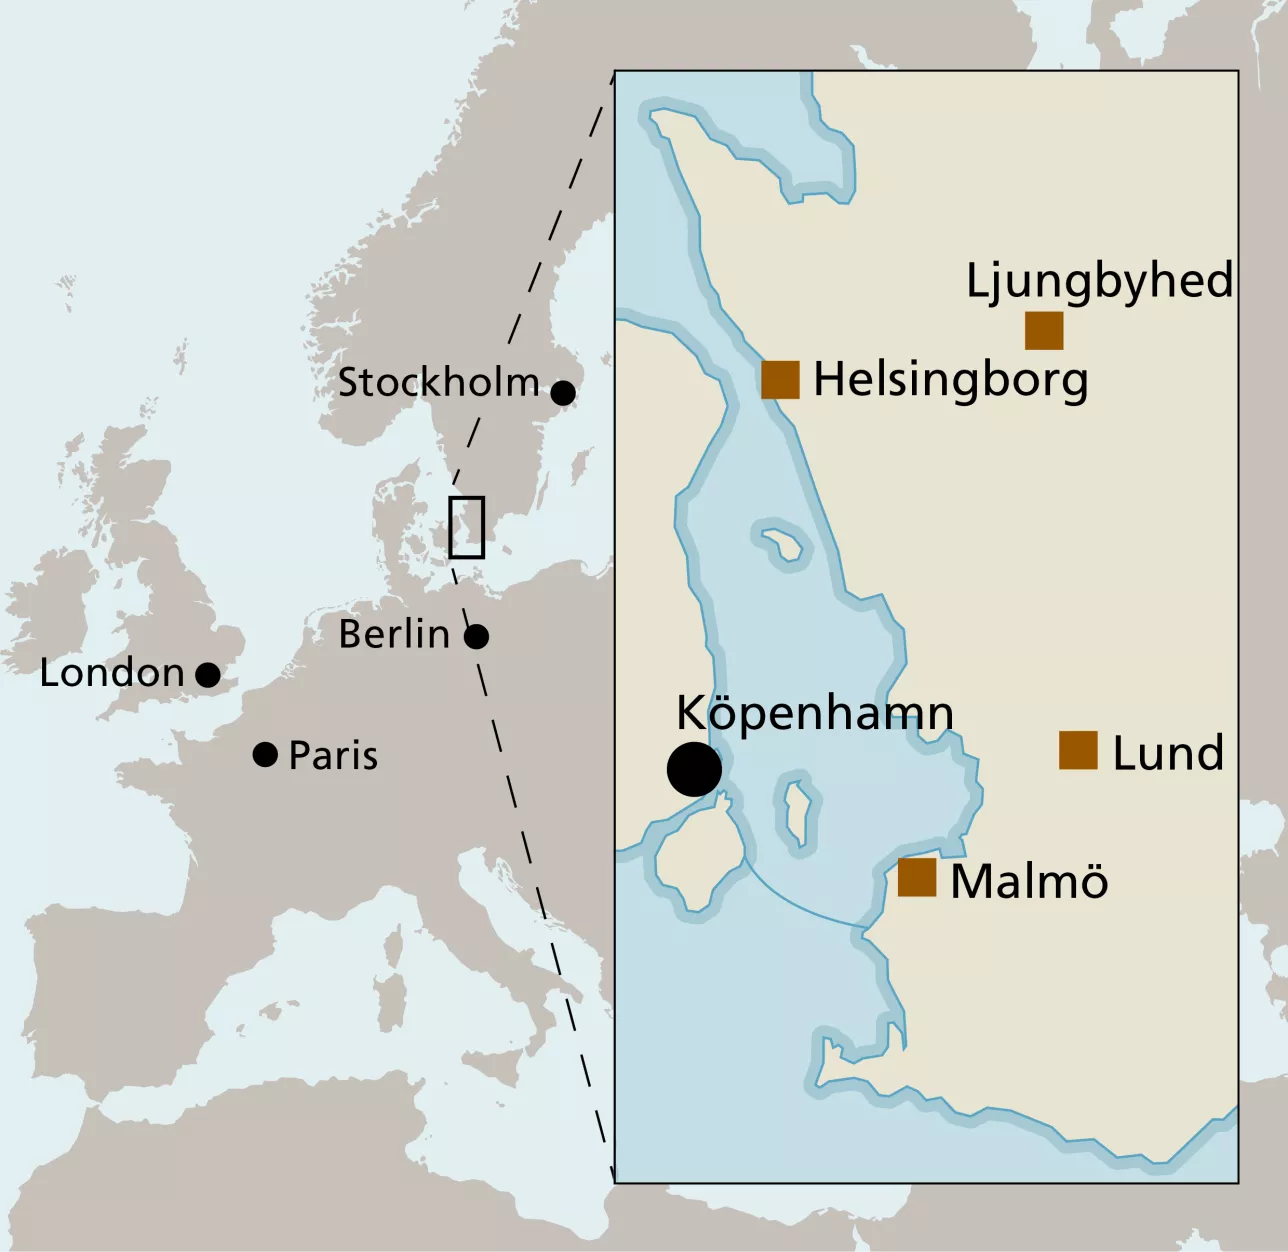 Karta över delar av norra Europa som zoomar in Skåne och orterna Lund, Malmö, Helsingborg och Ljungbyhed. Illustration.